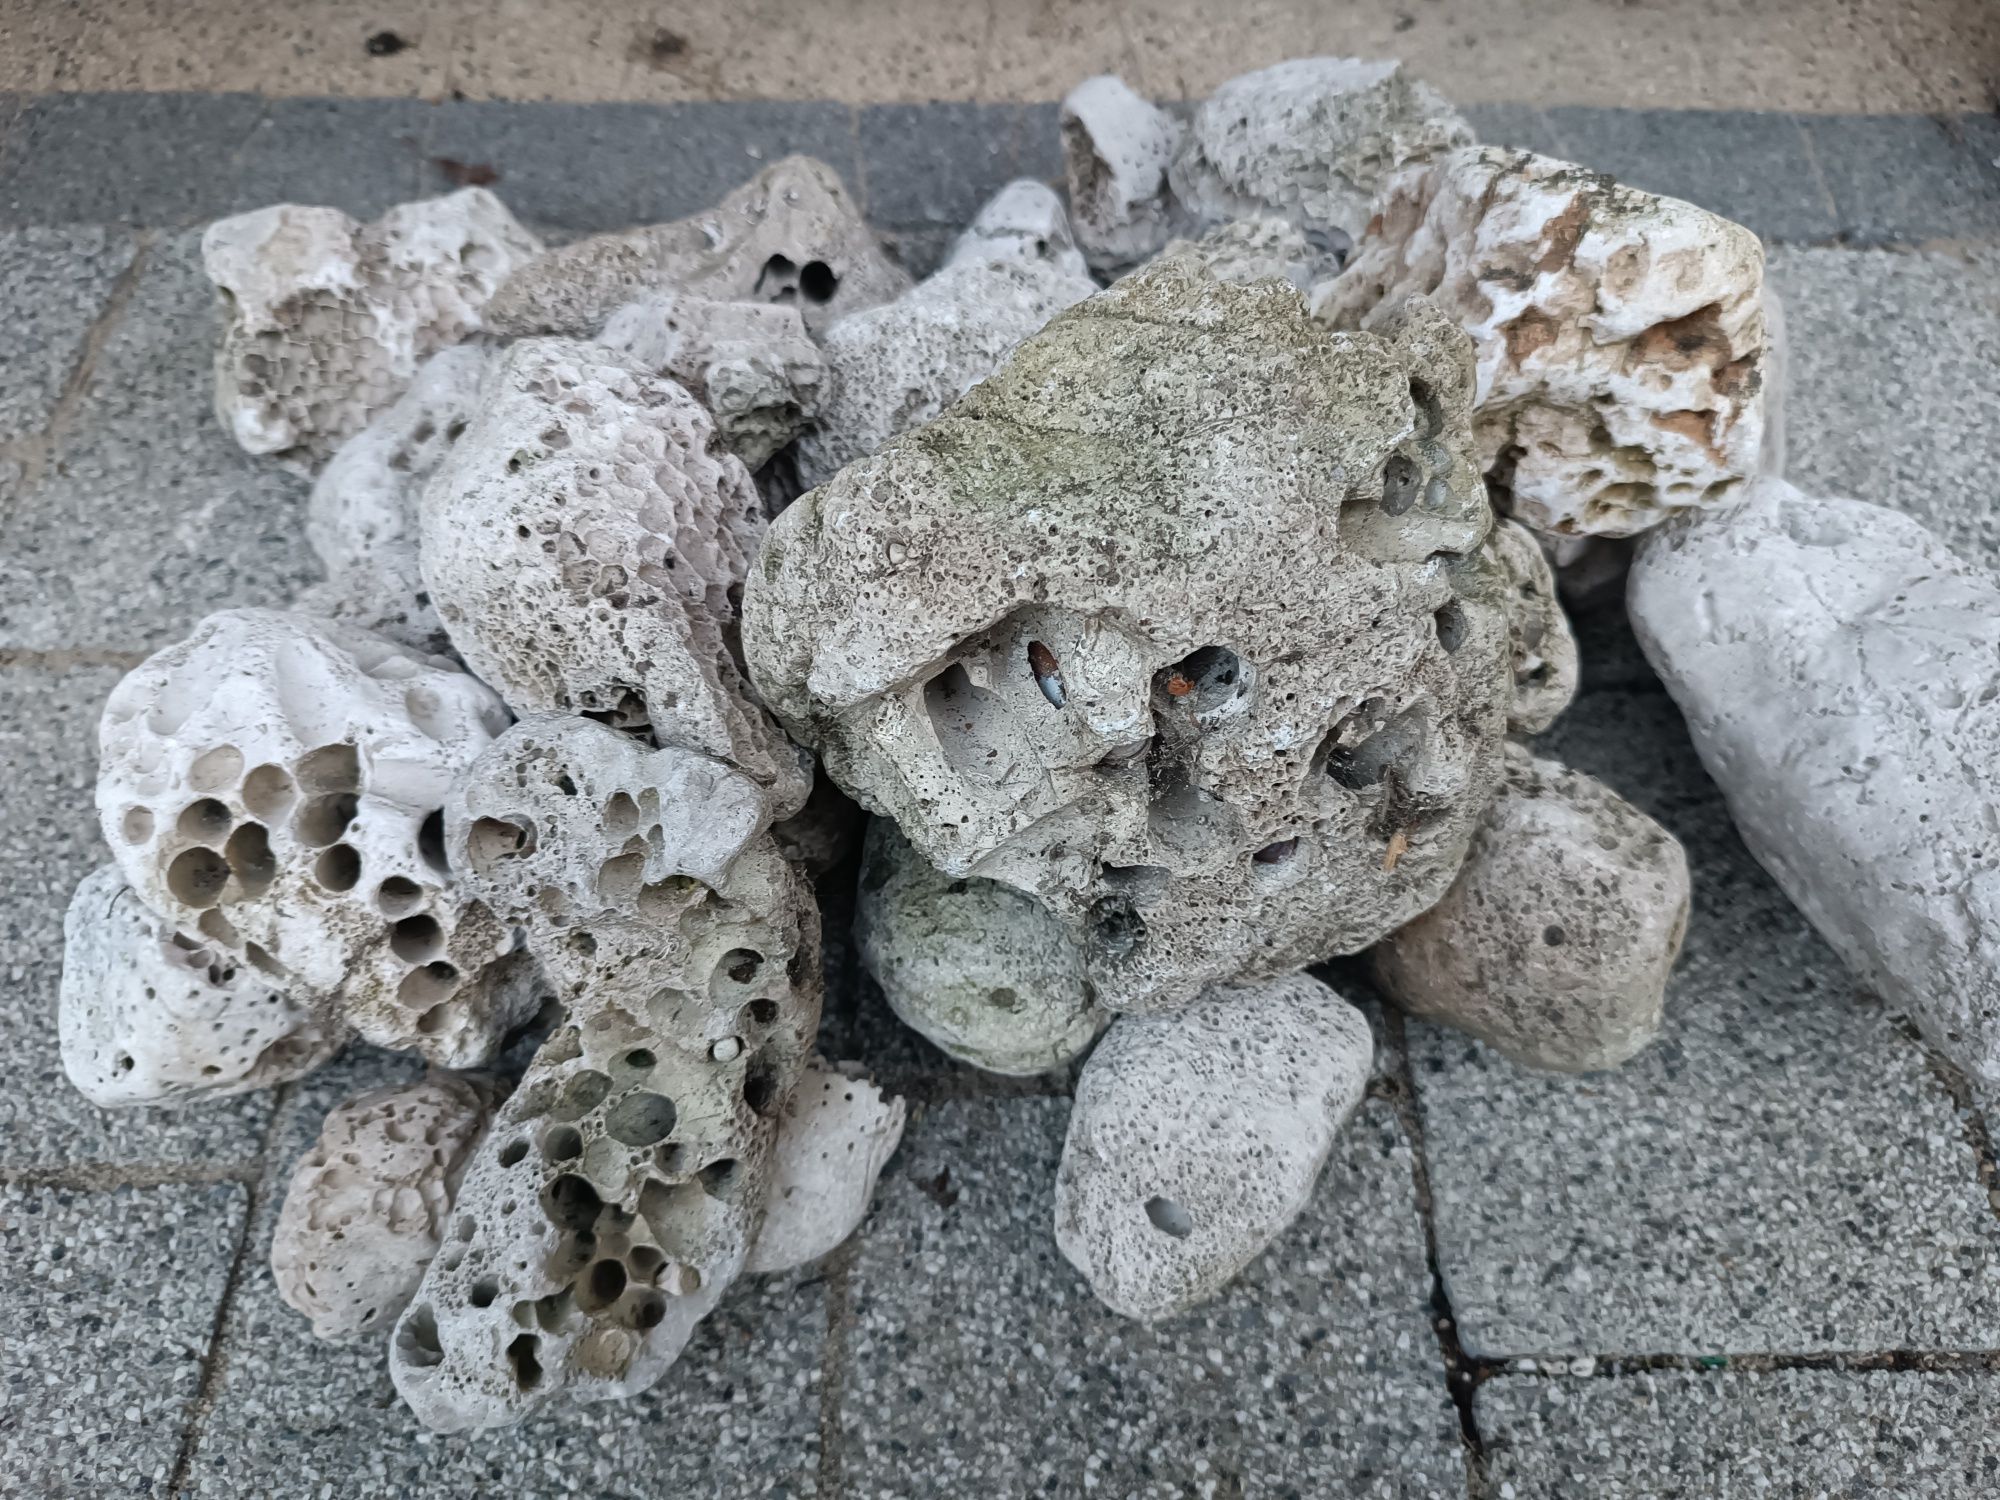 Kamienie z Morza Adriatyckiego do akwarium, terrarium.